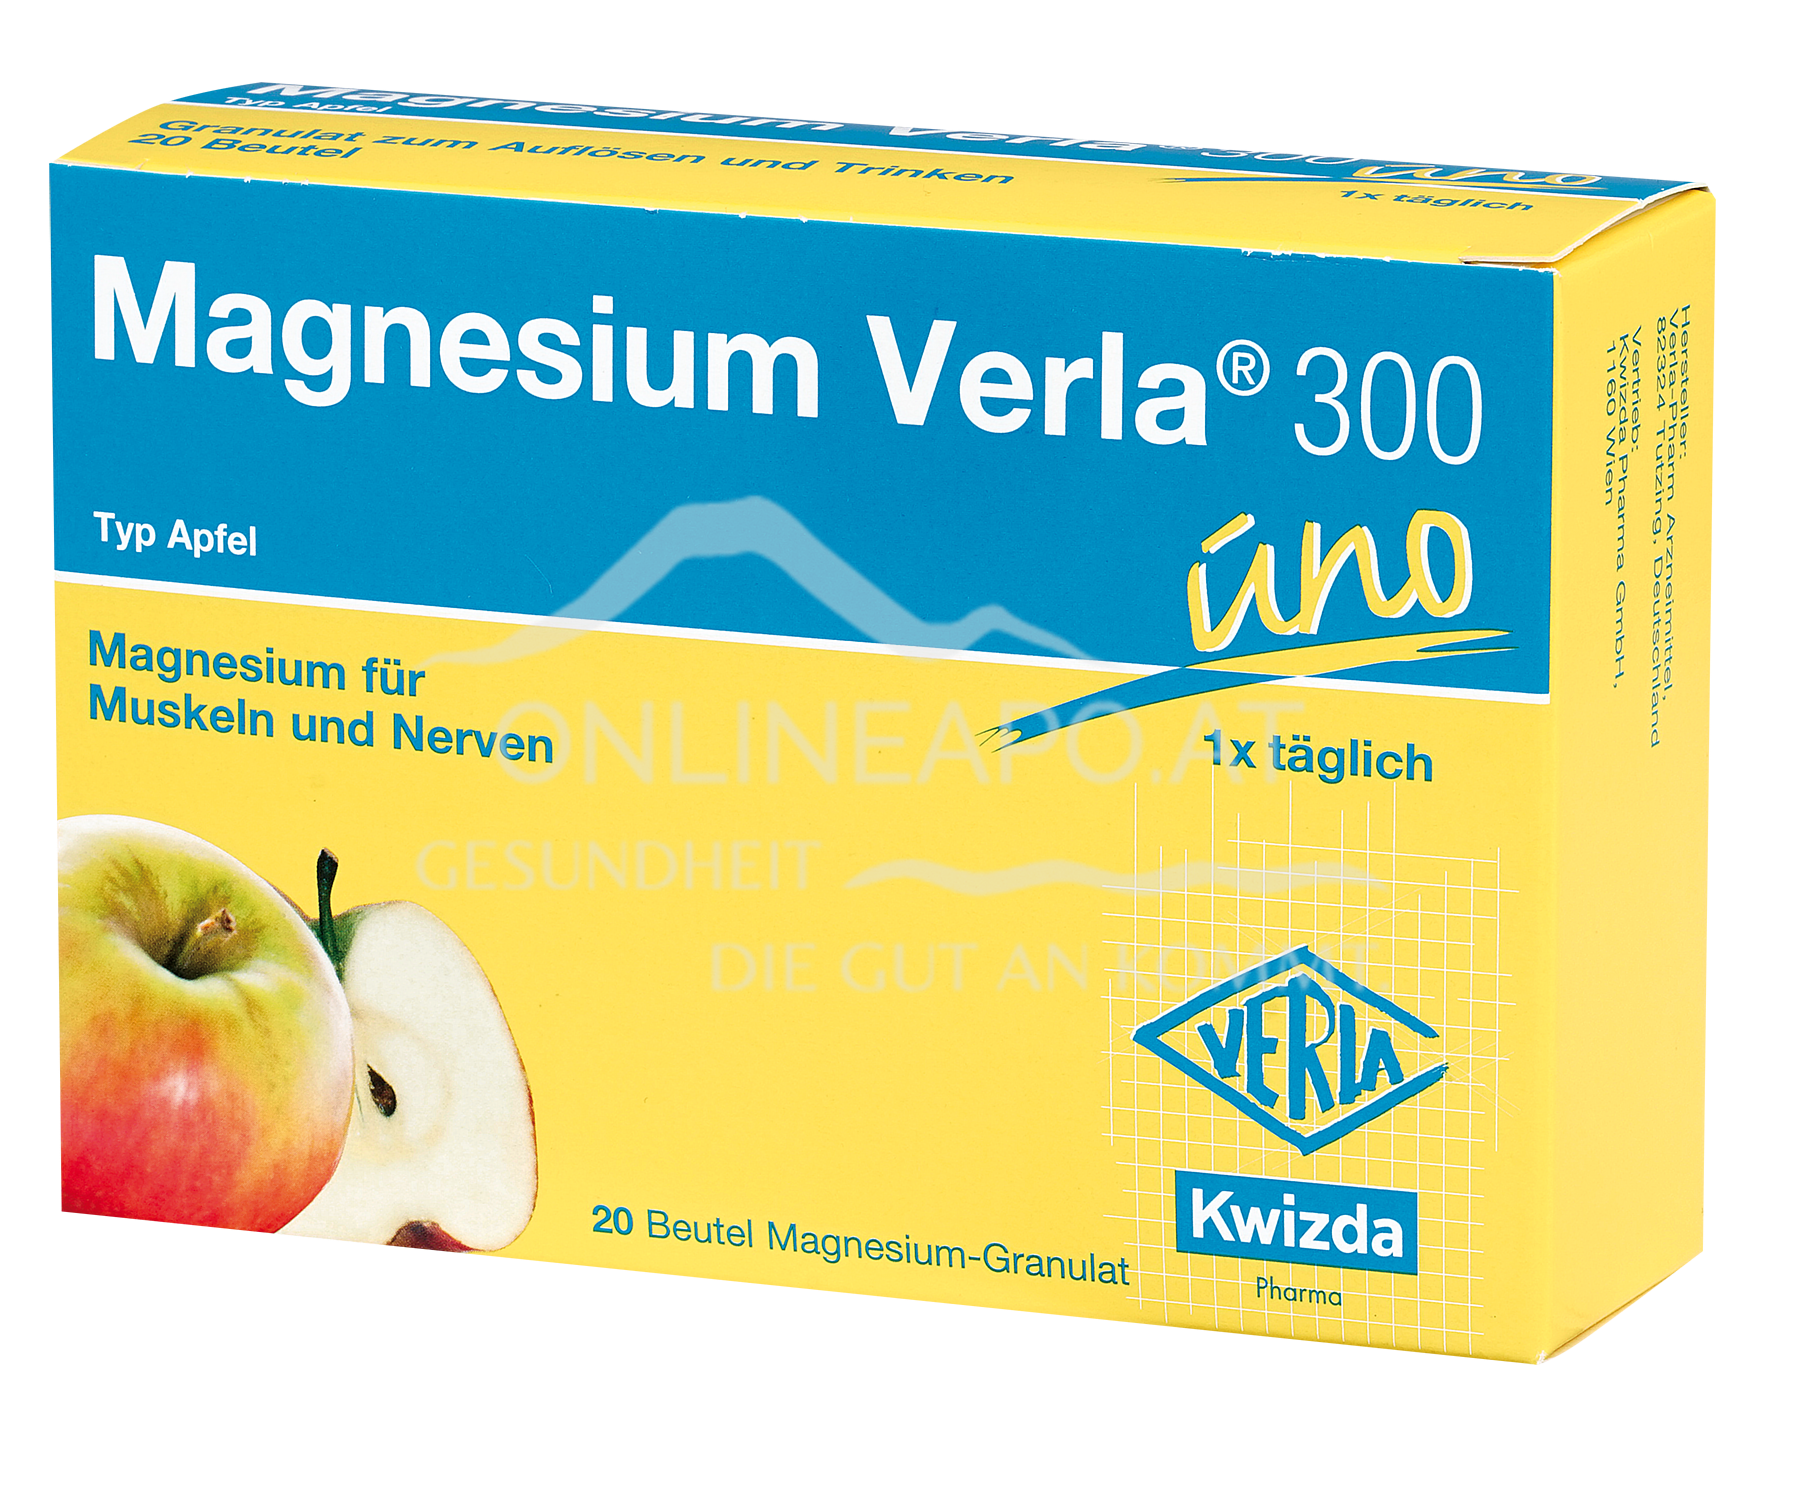 MAGNESIUM VERLA® 300 UNO Granulat Apfel